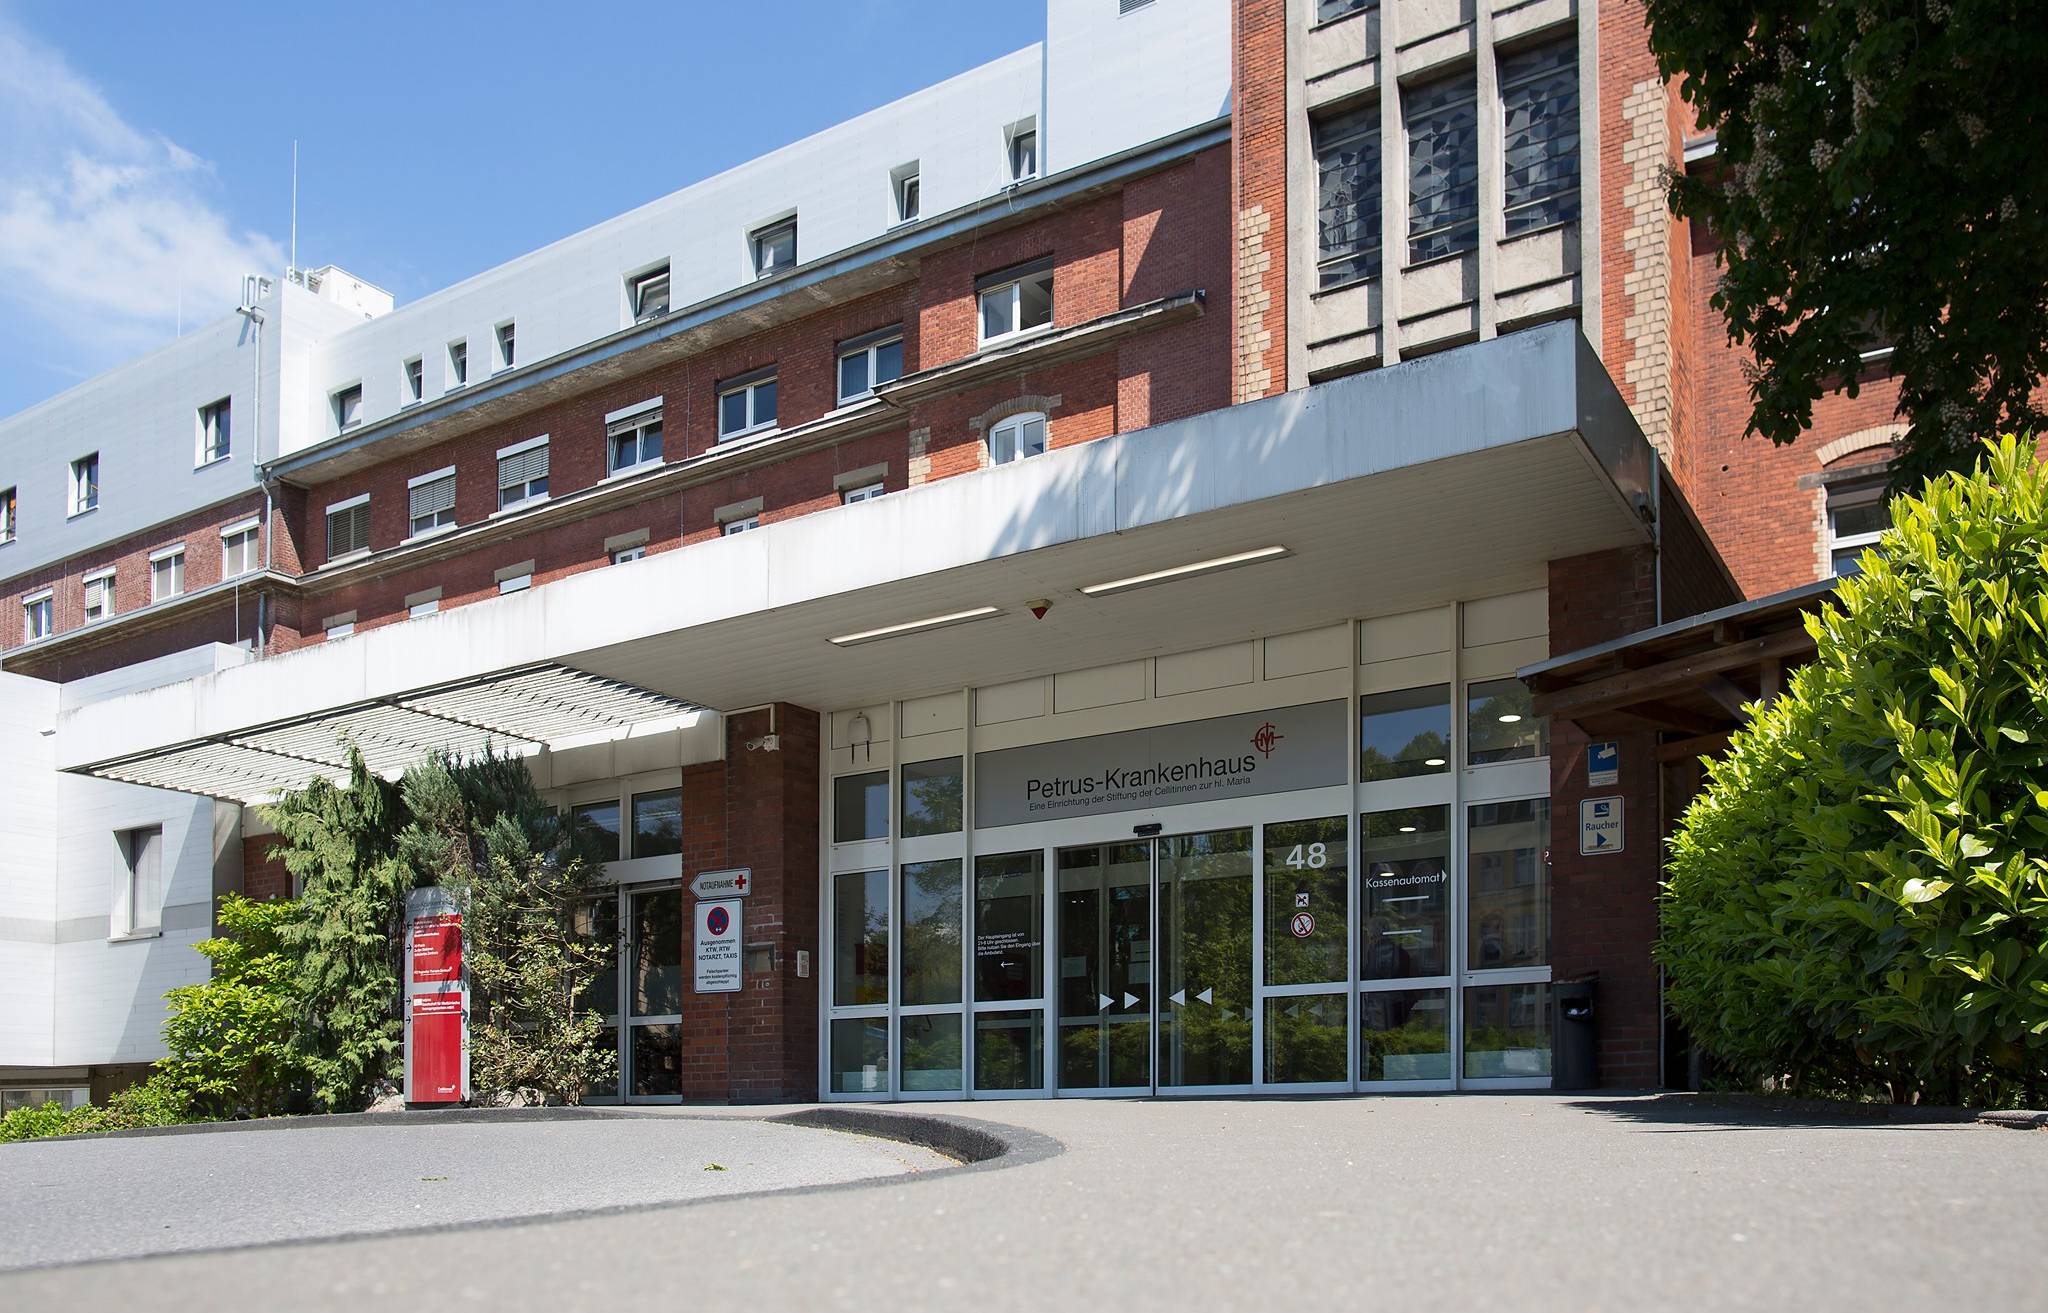  Zum Schutz von Patienten und Mitarbeitern haben das Petrus-Krankenhaus und das St.Josef-Krankenhaus als erste Wuppertaler Kliniken ein Besuchsverbot erlassen. 